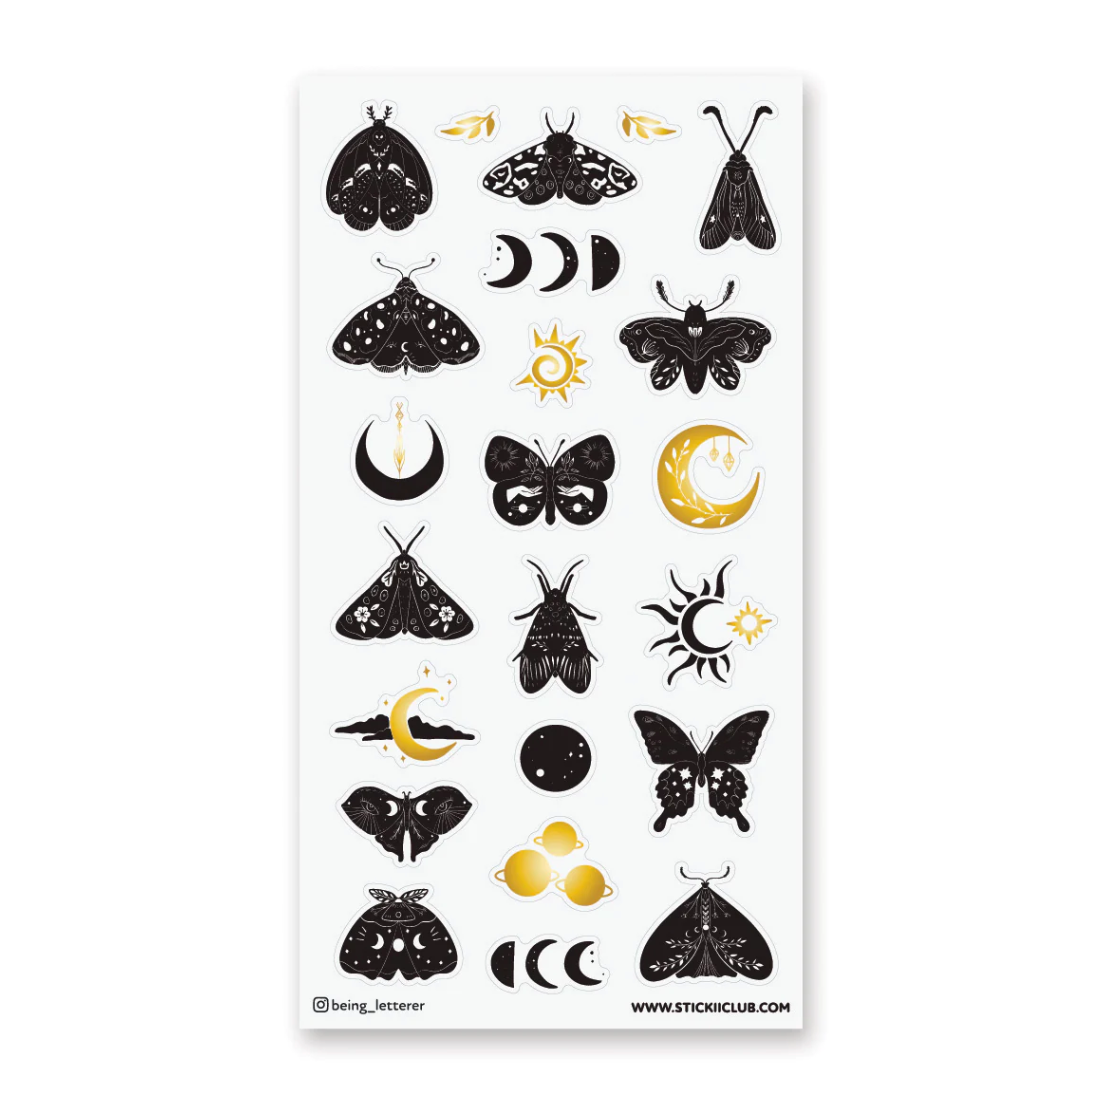 Moon Moths Sticker Sheet